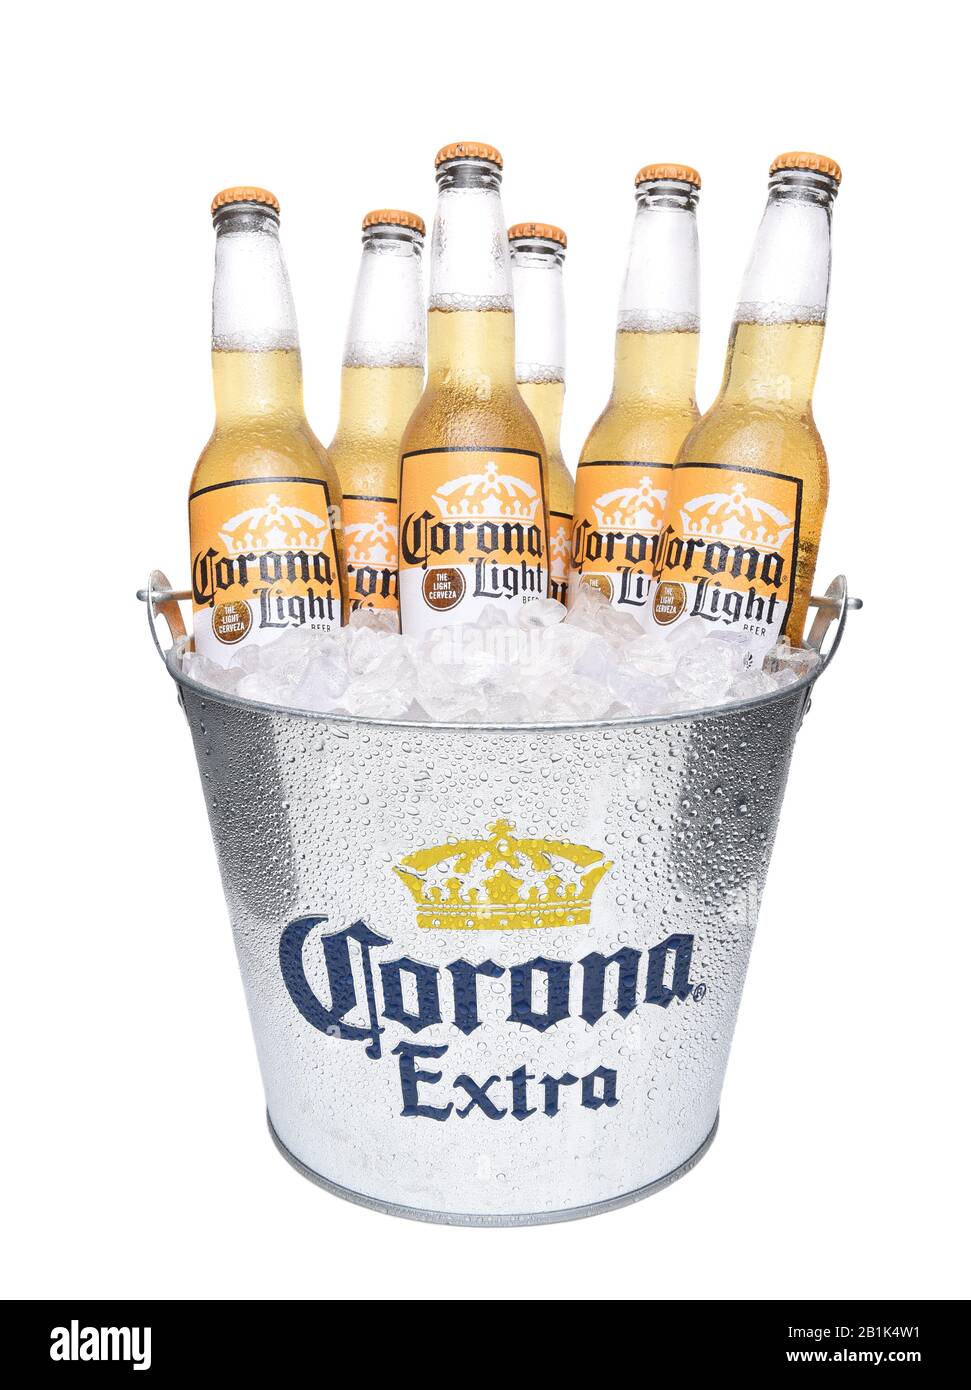 Irvine, KALIFORNIEN - 14. DEZEMBER 2017: Eimer mit Corona-Light-Bierflaschen. Corona ist das beliebteste Importbier in den USA. Stockfoto